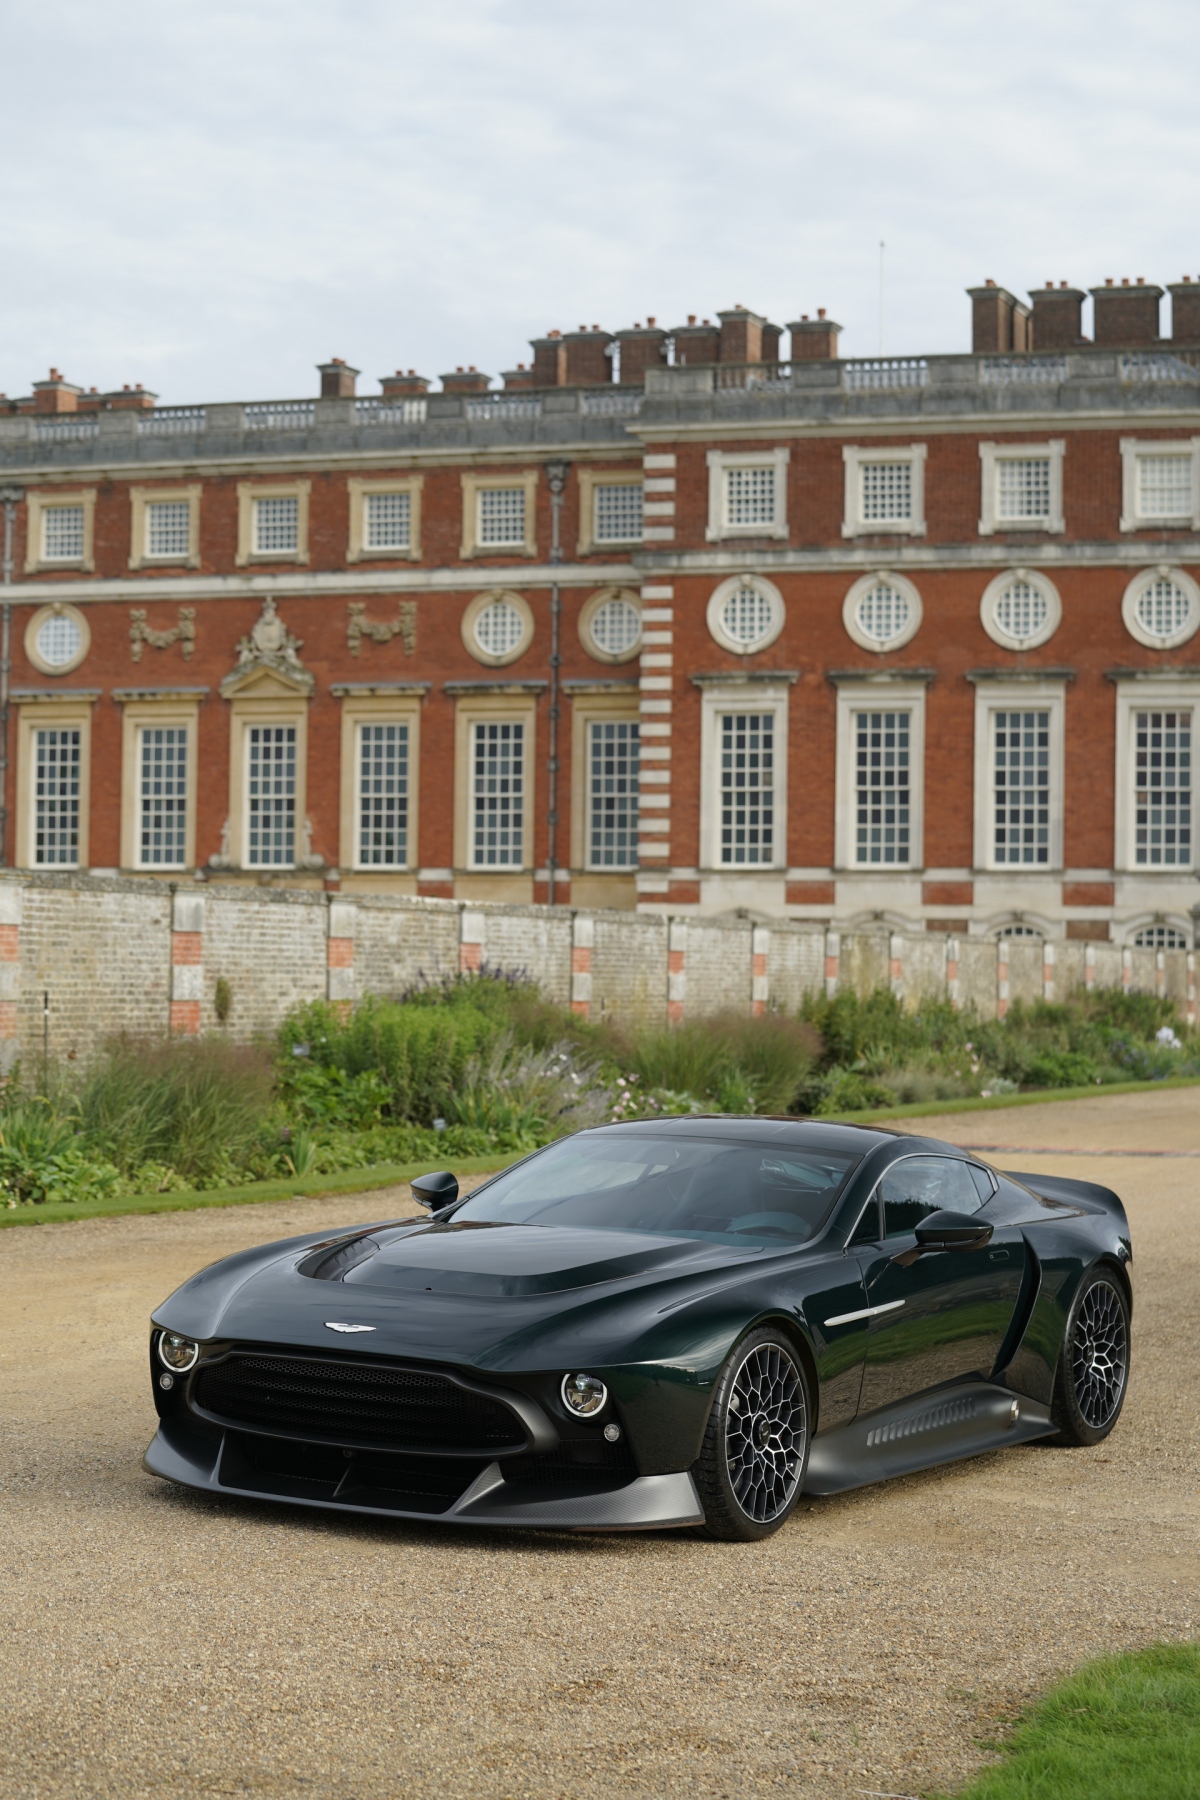 Giống với nhiều hãng siêu xe, xe sang trên khắp thế giới, Aston Martin cũng sở hữu cho mình bộ phận cá nhân hóa riêng có tên gọi là Q Division